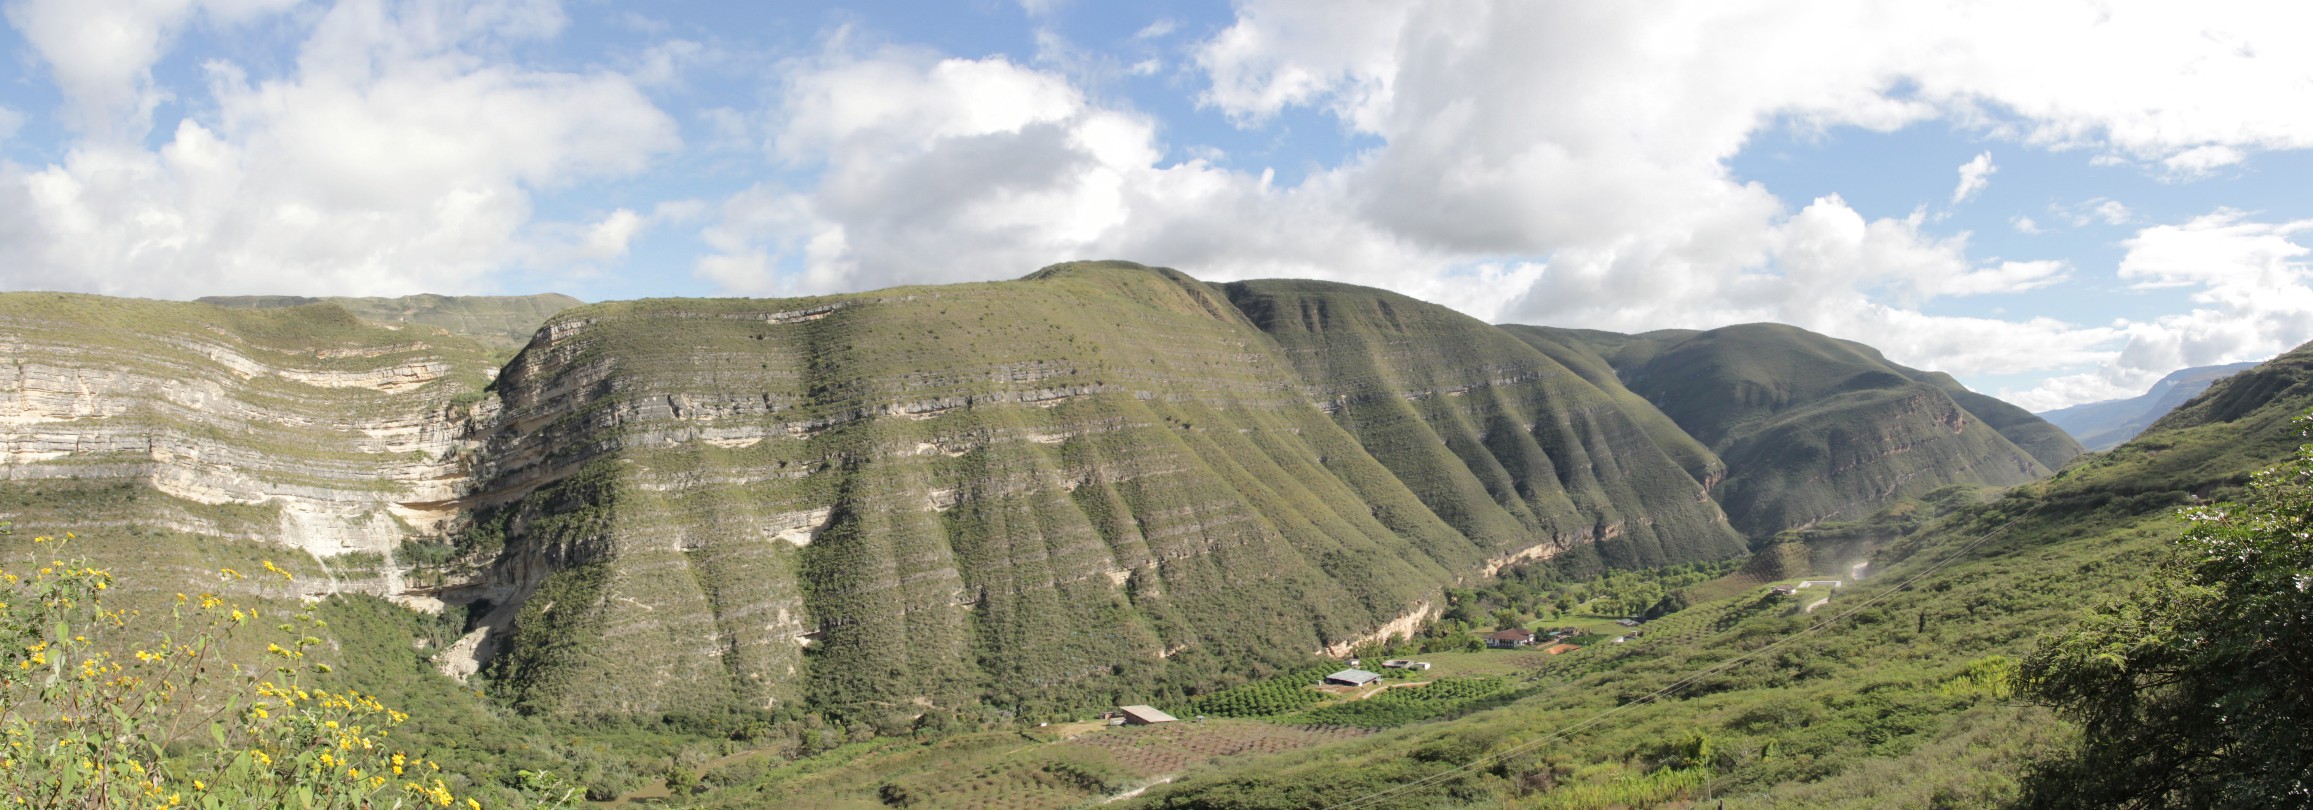 panorama-chachapoya02.jpg